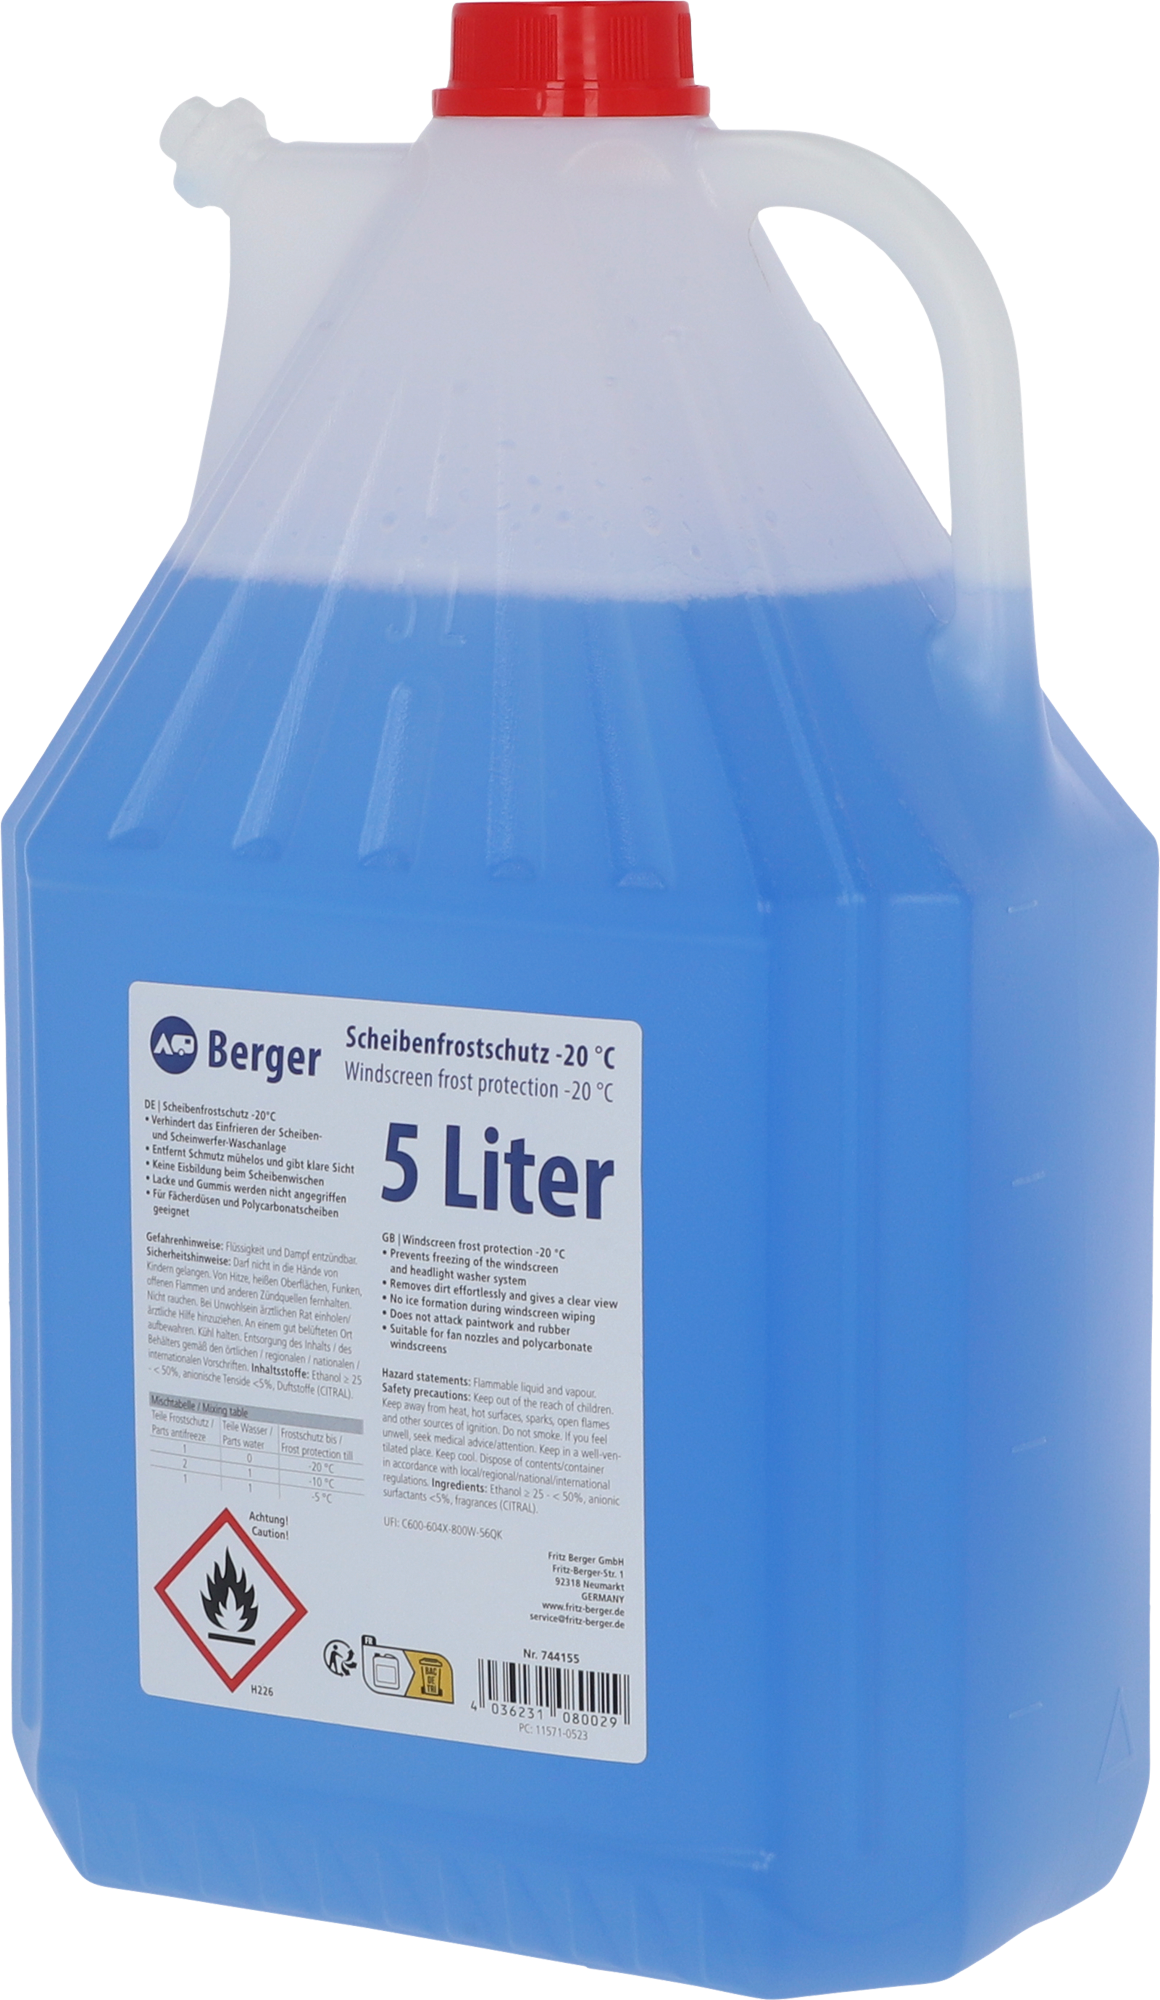 Sonax - AntiFrost und KlarSicht WinterScheibenreiniger, 5 Liter 